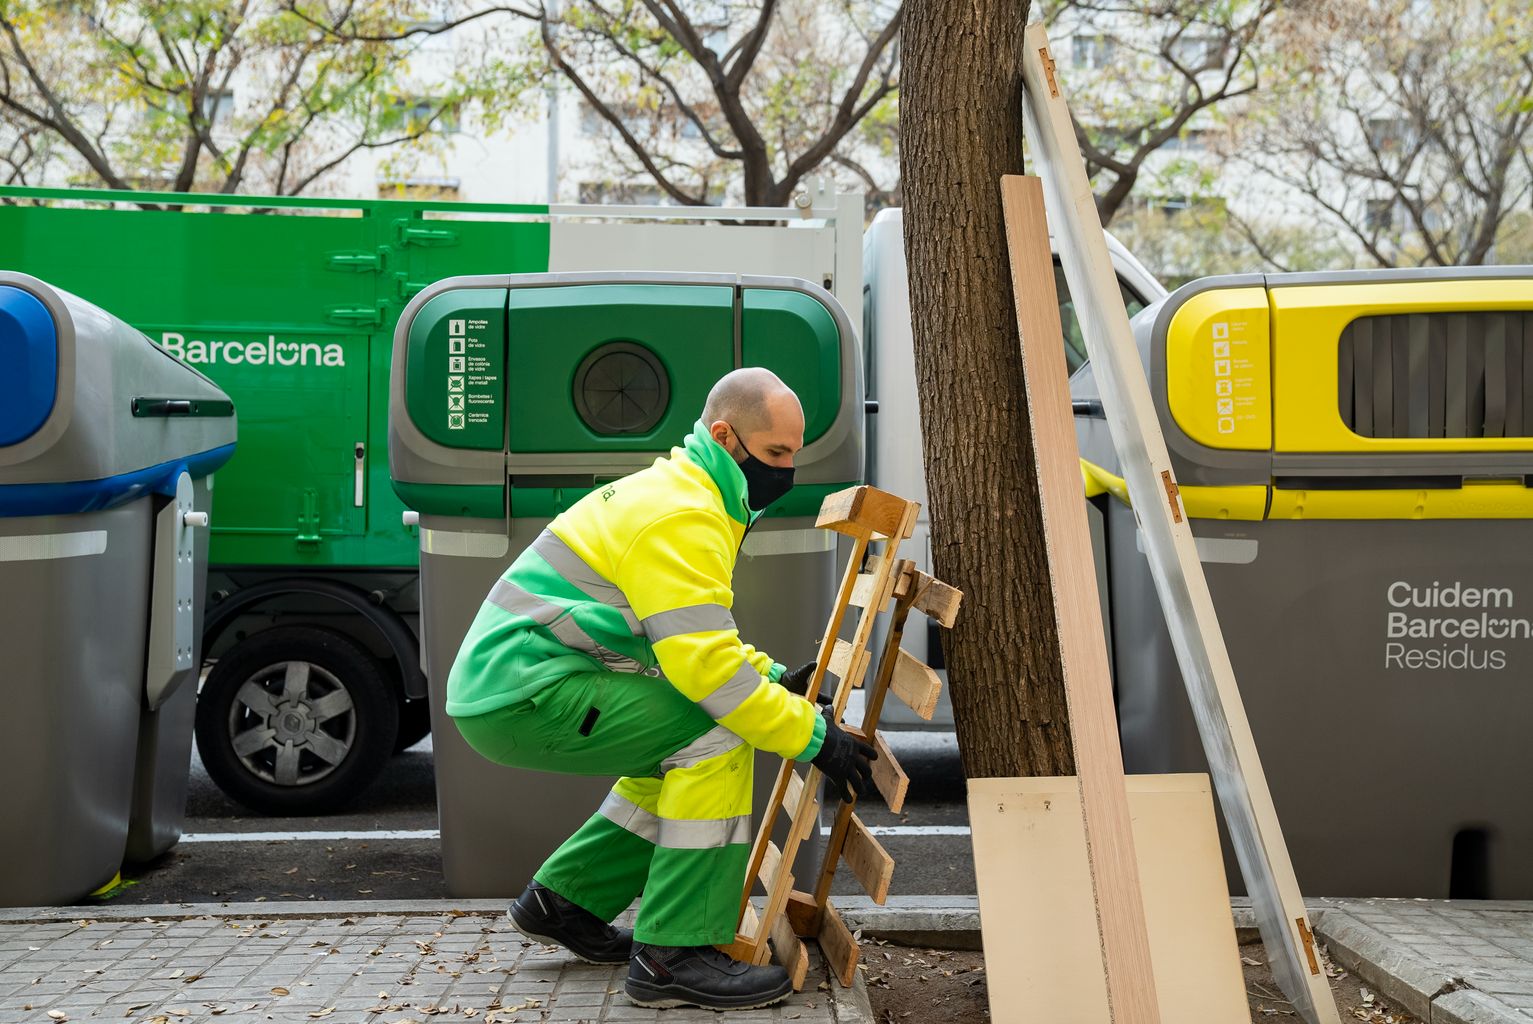 Un treballador del servei de neteja (Cuidem Barcelona Residus) recull unes fustes i mobles abandonats a l'escocell d'un arbre al costat d'uns contenidors de reciclatge